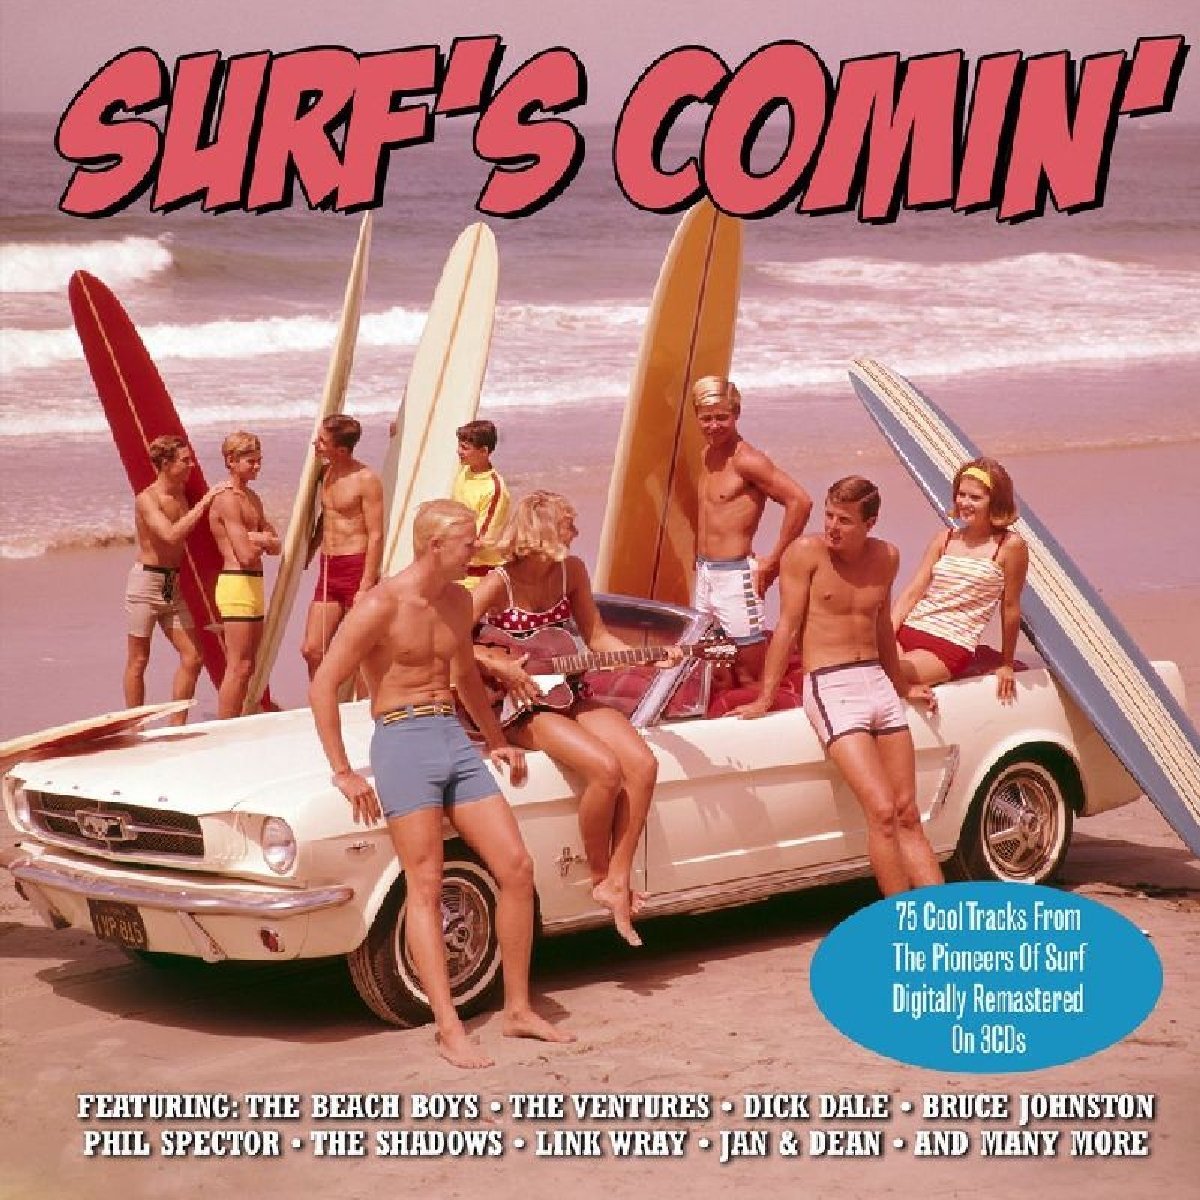 SURFS COMIN